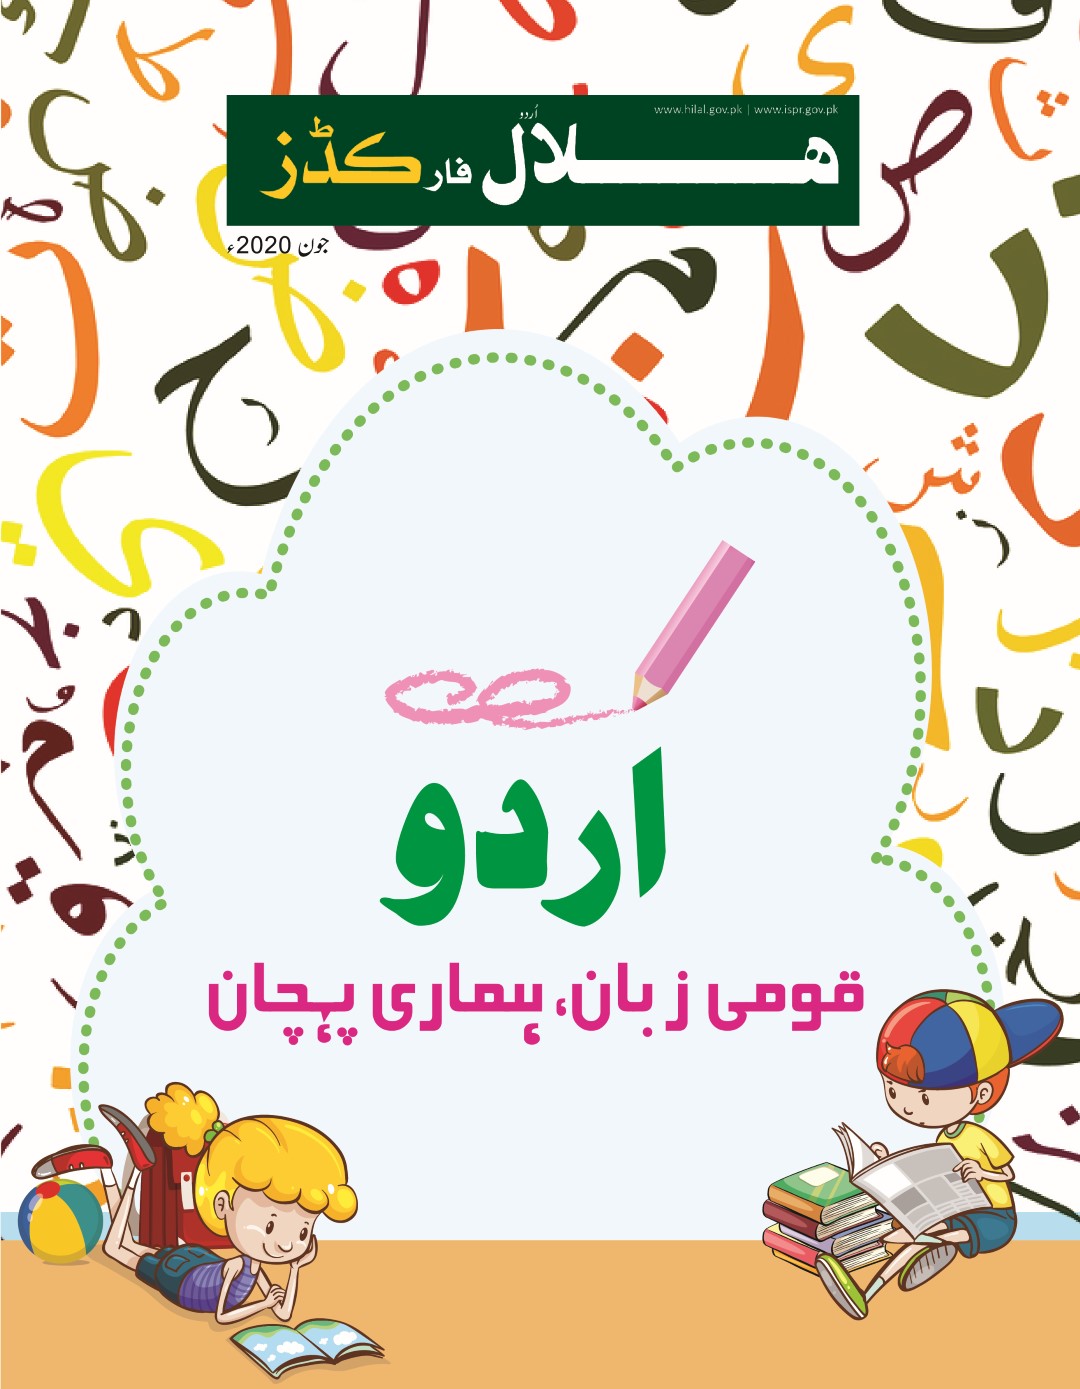 Hilal for Urdu June 2020